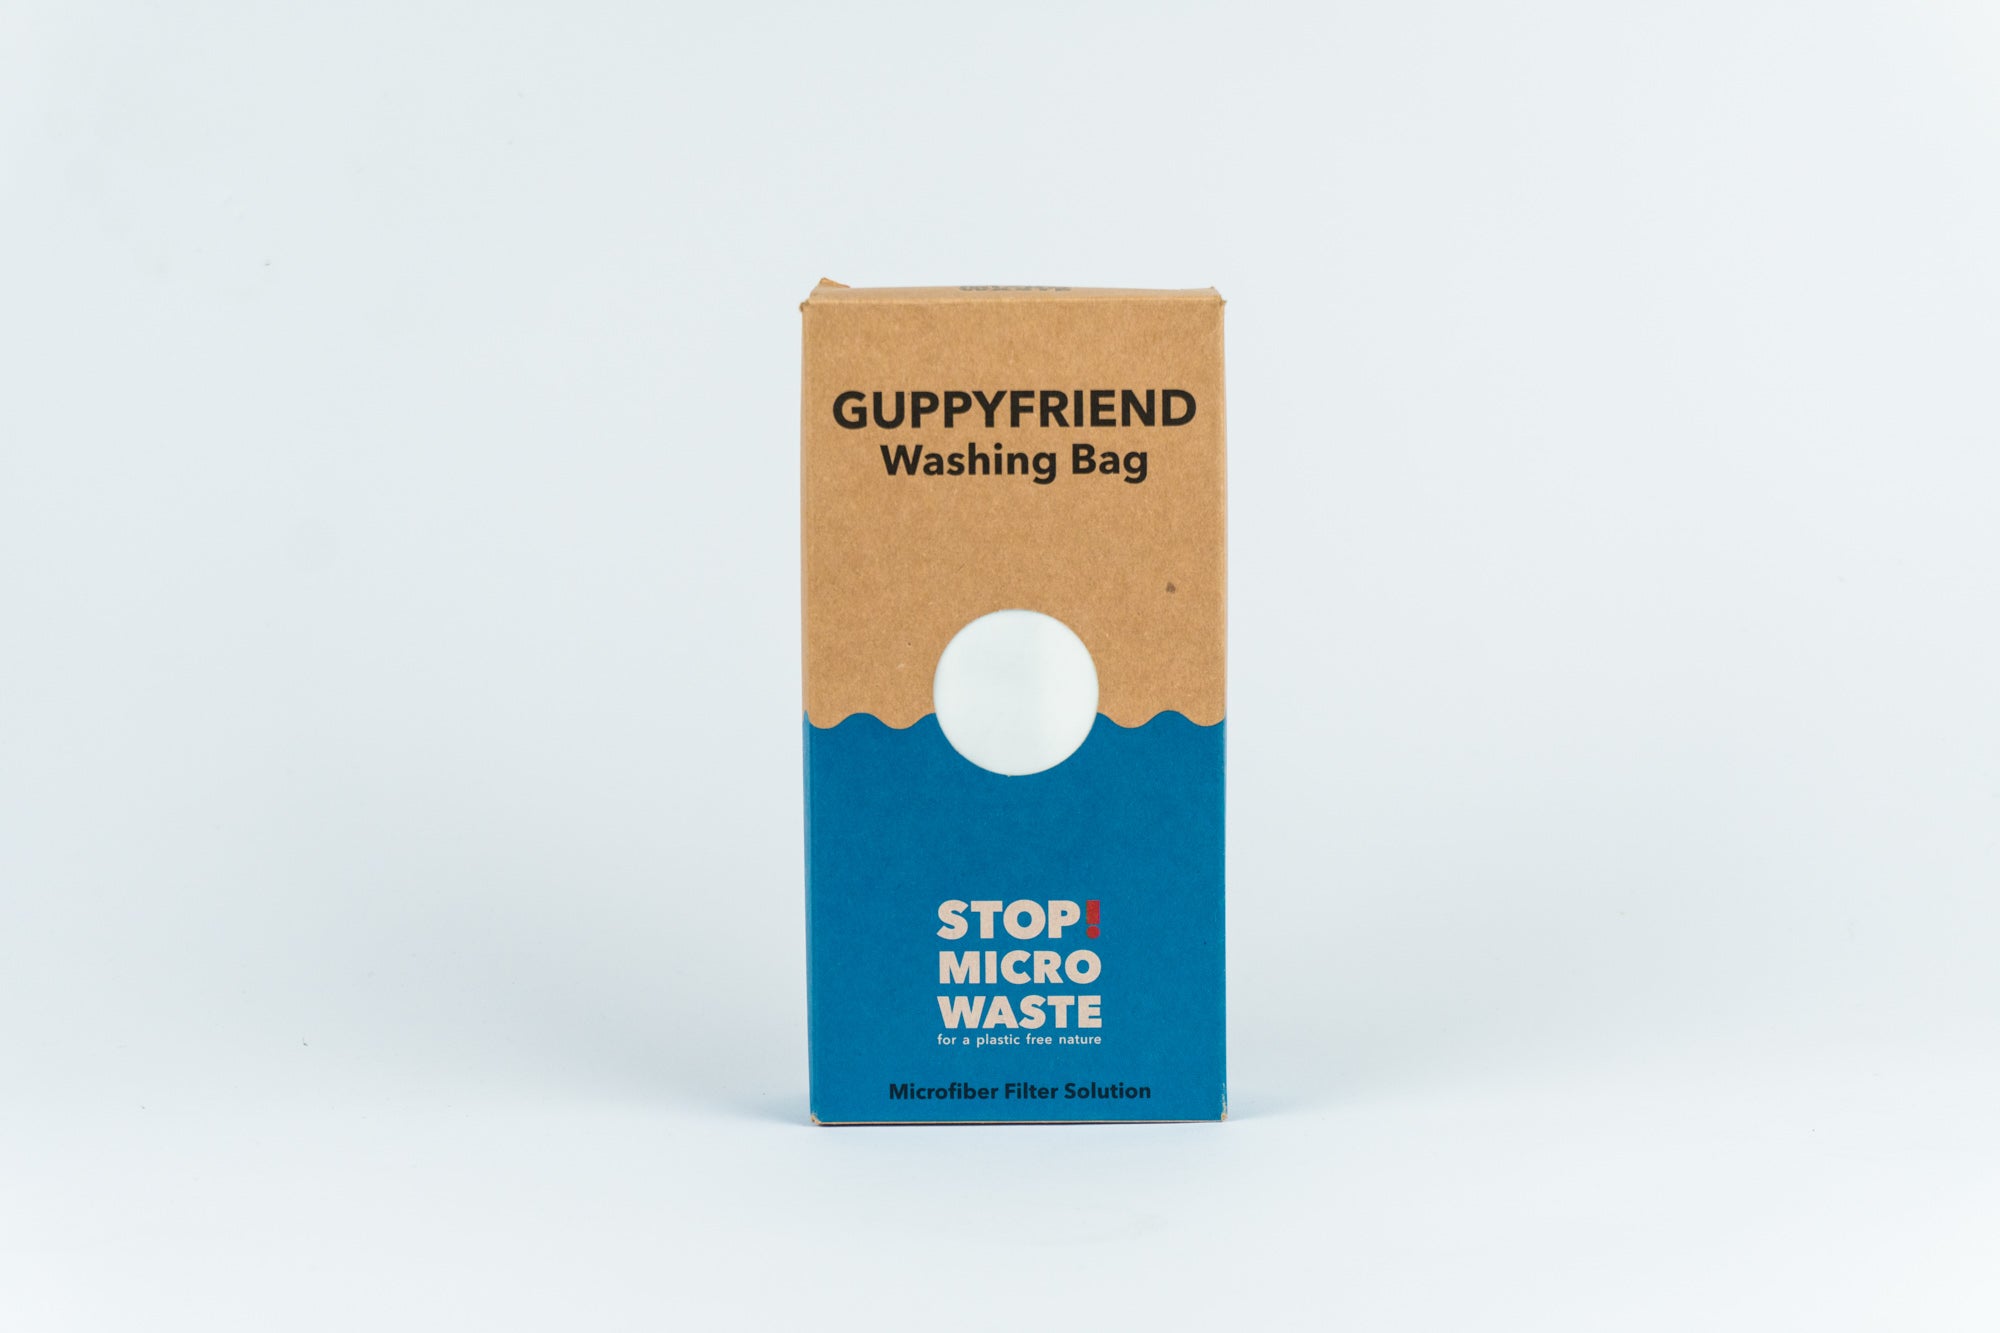 Washing Bag “Stop Micro Waste” – Guppyfriend